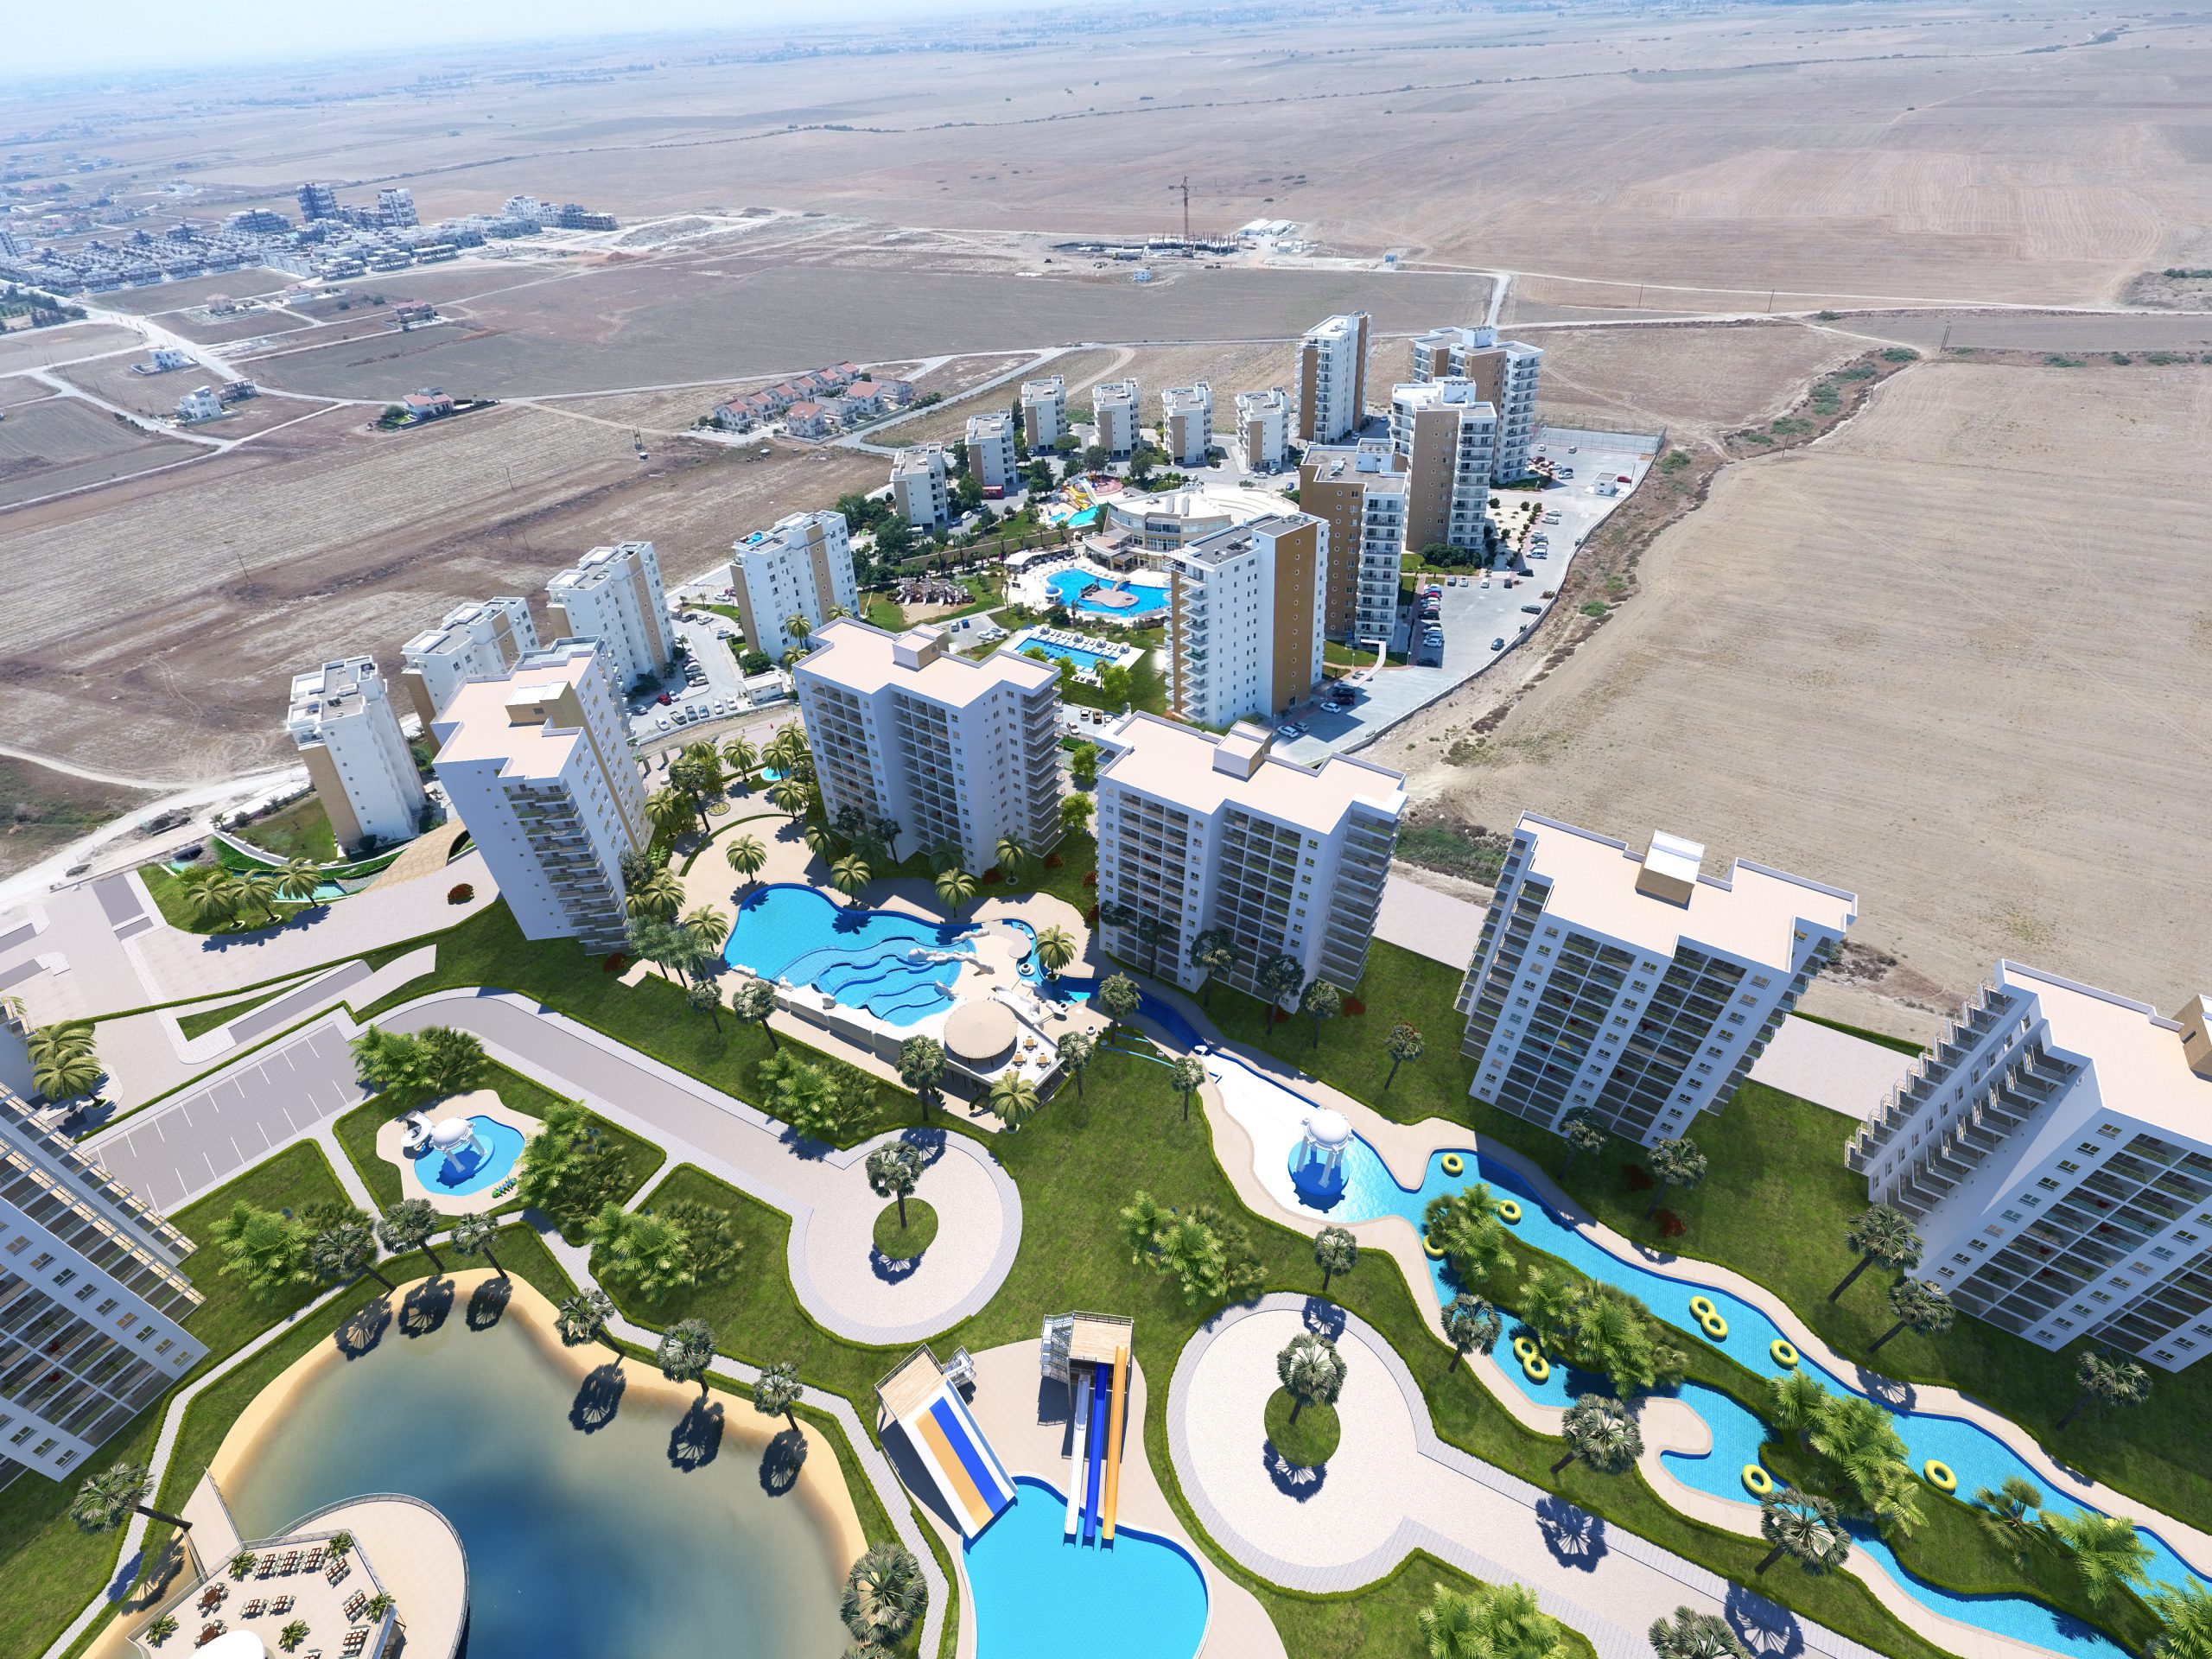 Resort Project in Iskele Long Beach.